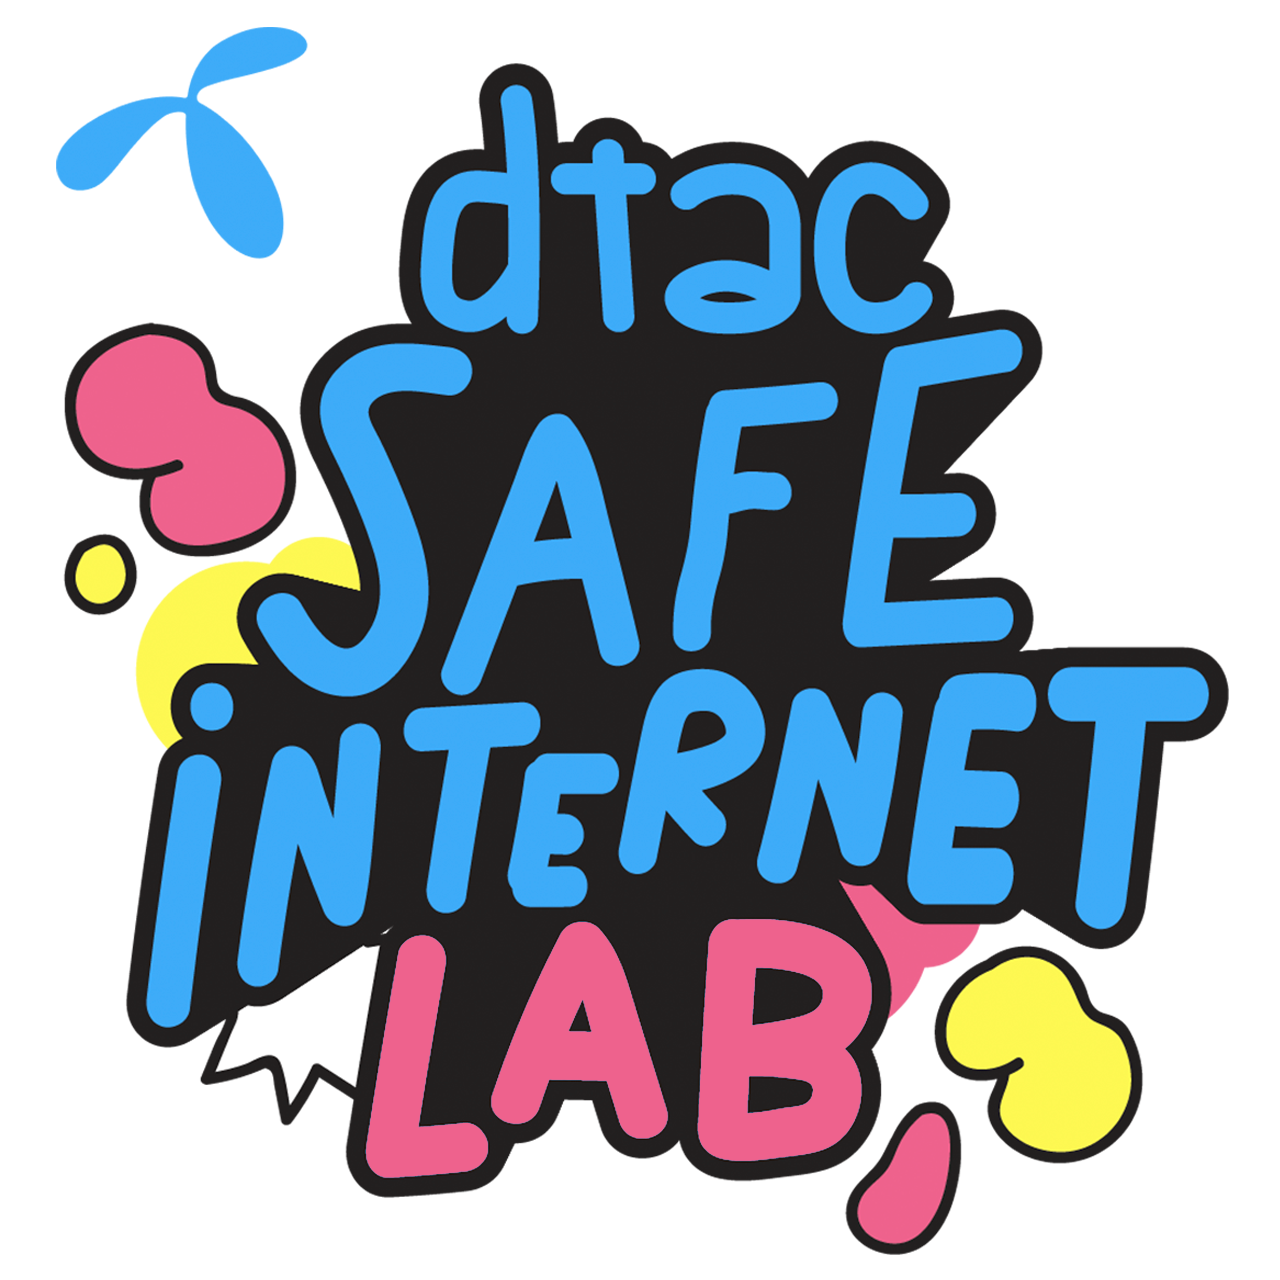 dtac safe internet logo